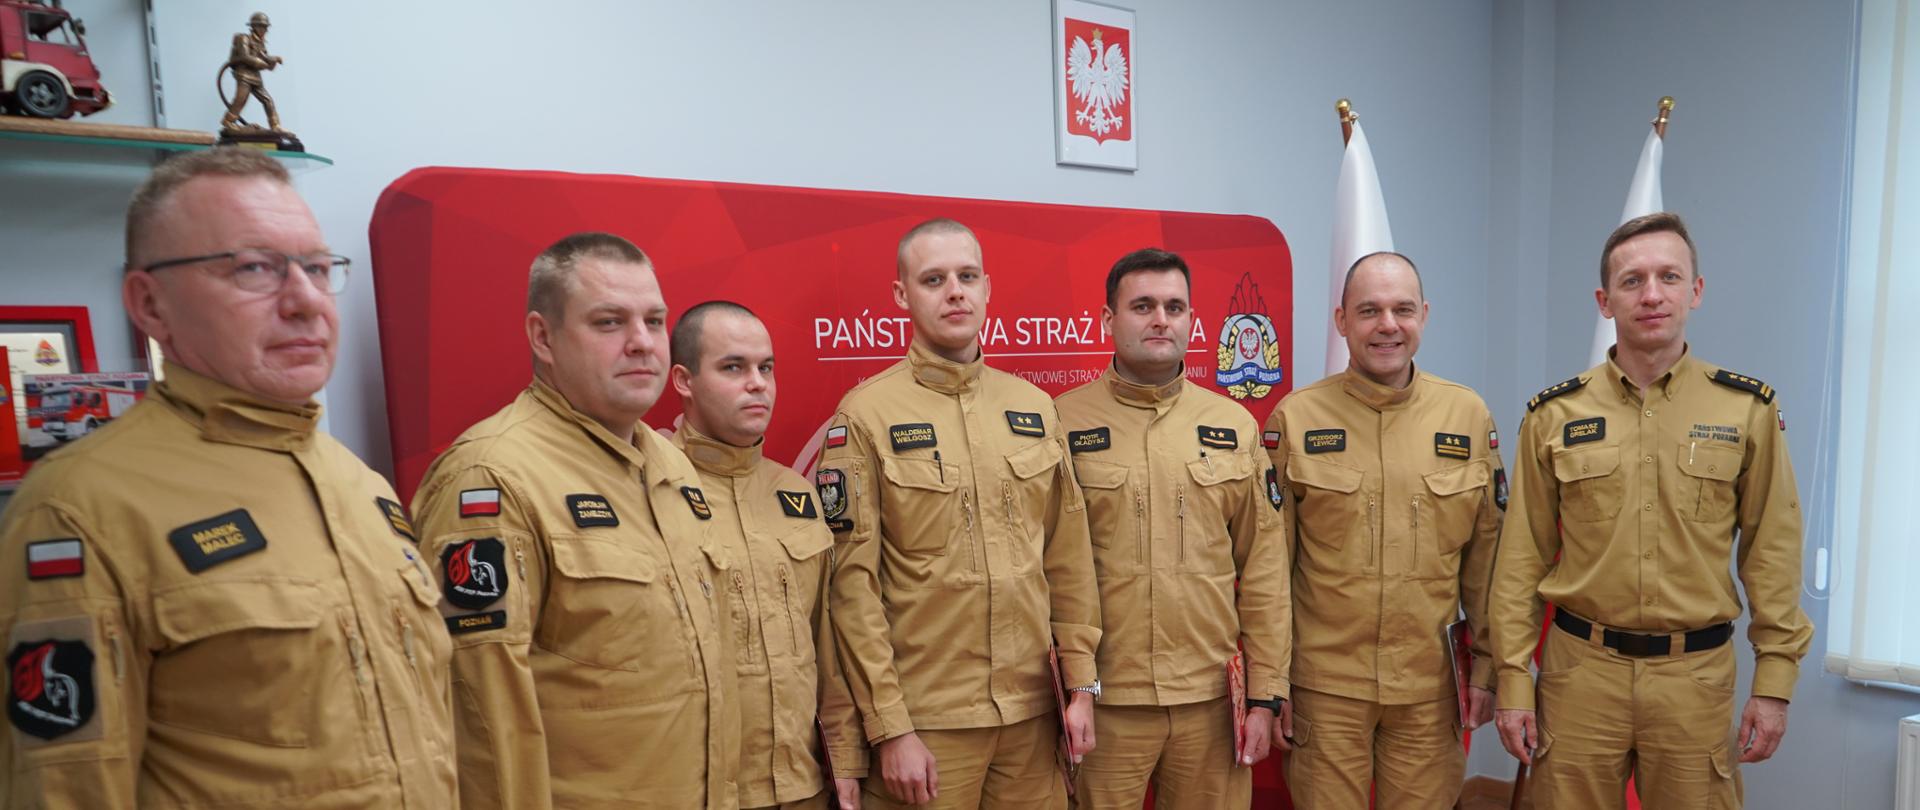 Zdjęcie przedstawia siedmiu funkcjonariuszy Komendy Wojewódzkiej PSP w Poznaniu ustawionych w pomieszczeniu, po wręczeniu nagród Ministra Spraw Wewnętrznych i Administracji.